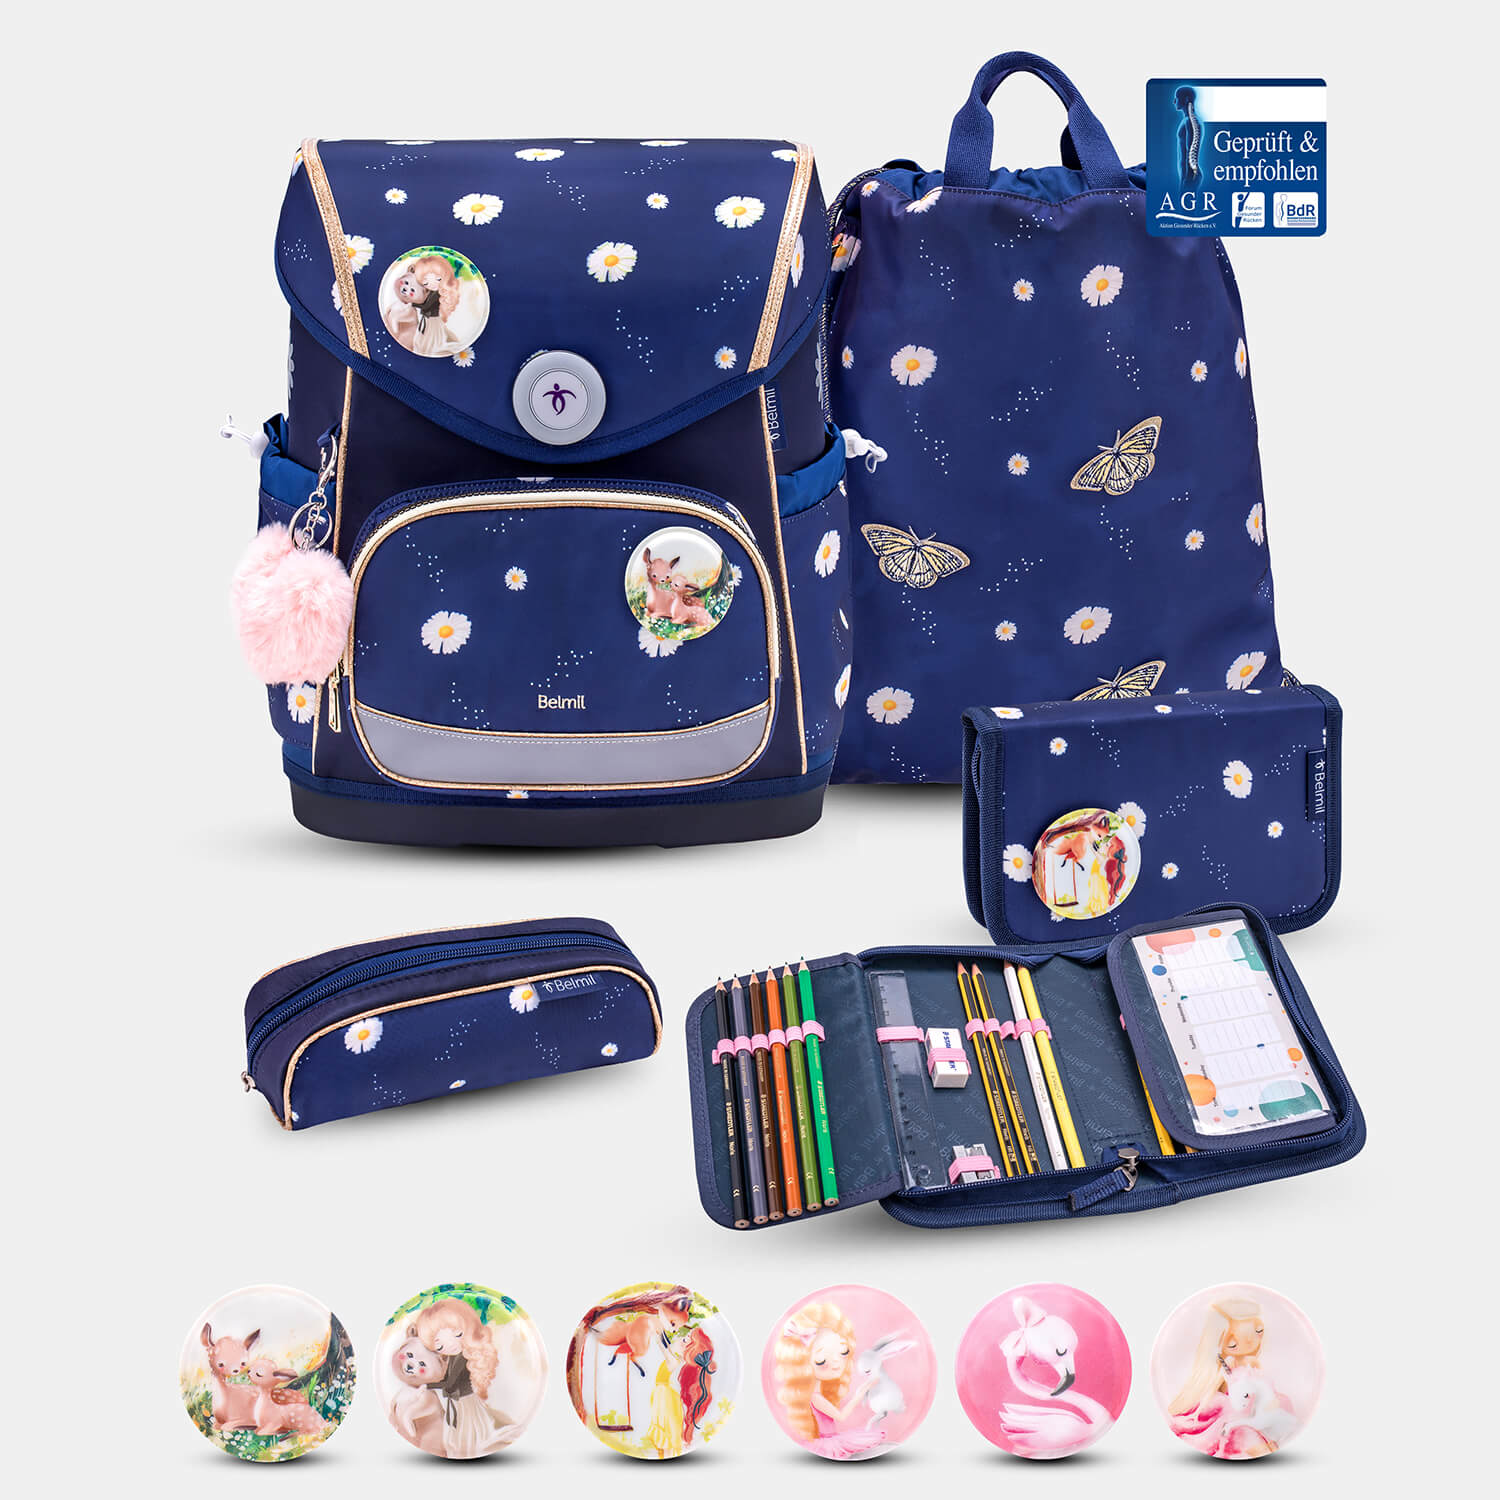 Compact Plus Daisy Schoolbag set 5pcs.